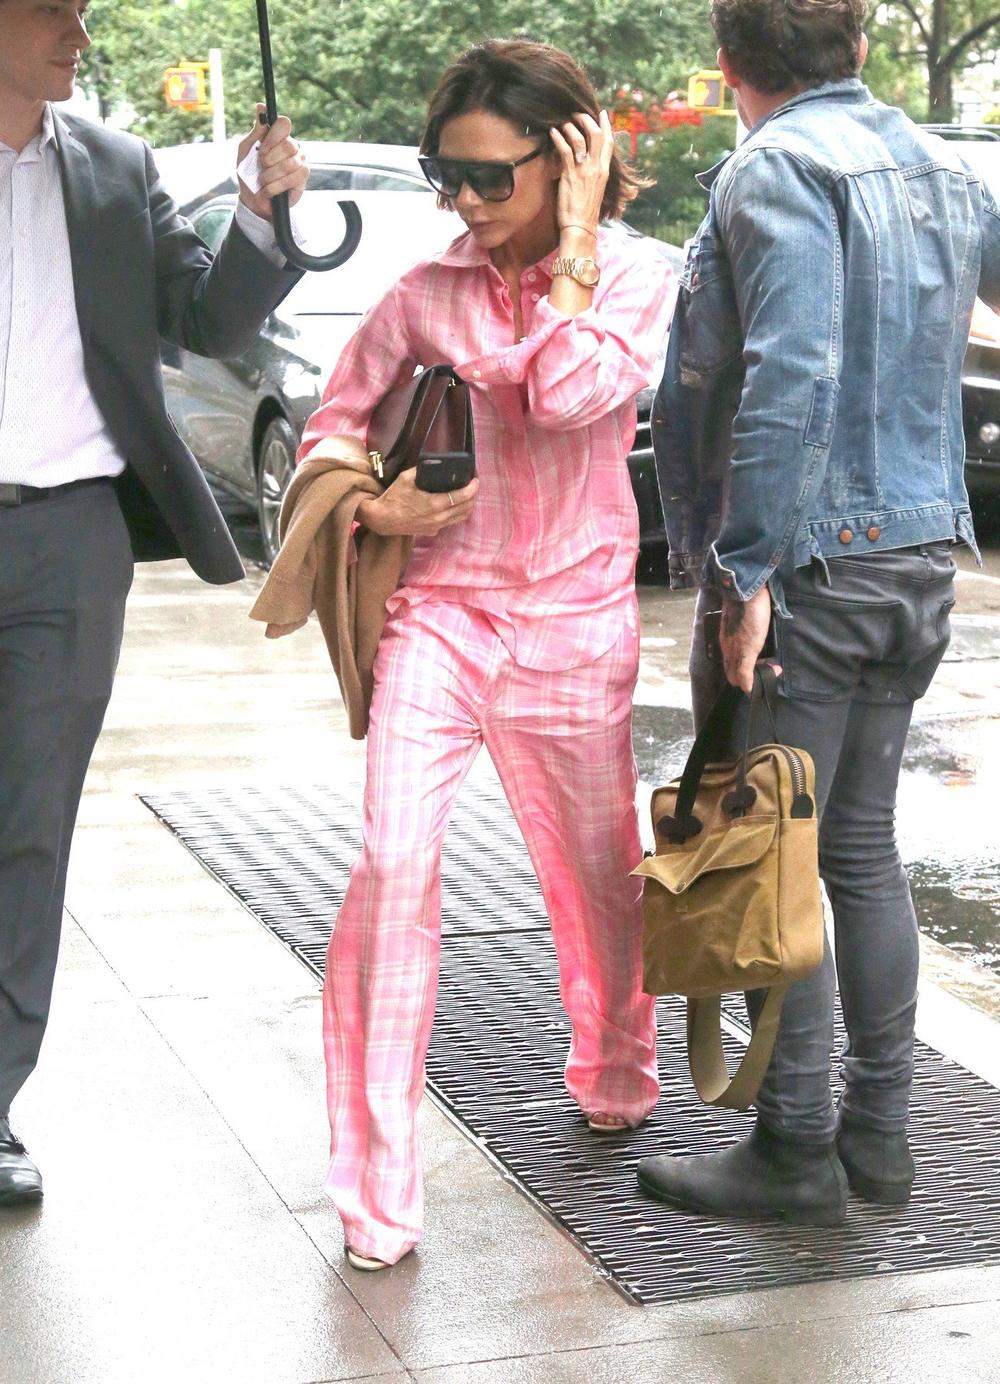 <p>Popularna dizajnerka i nekadašnja pevačica Viktorija Bekam ovih dana ima više razloga za brigu od toga kakav kroj i boju da odabere za svoje nove modne komade...</p>